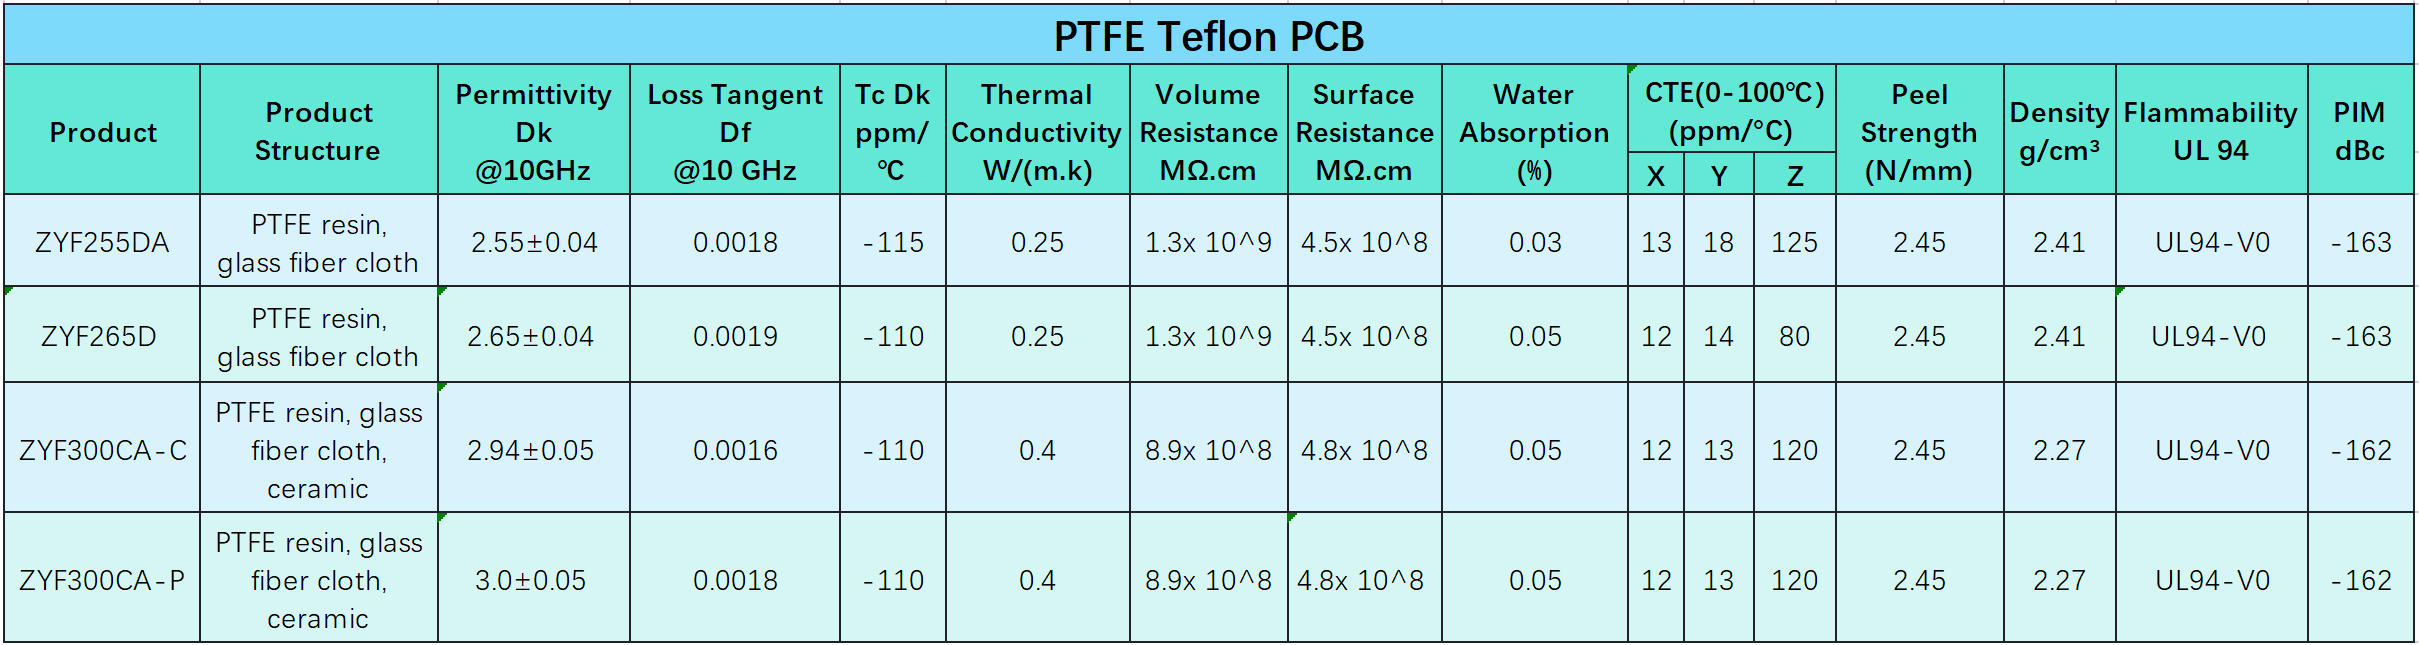 PTFE Teflon PCB